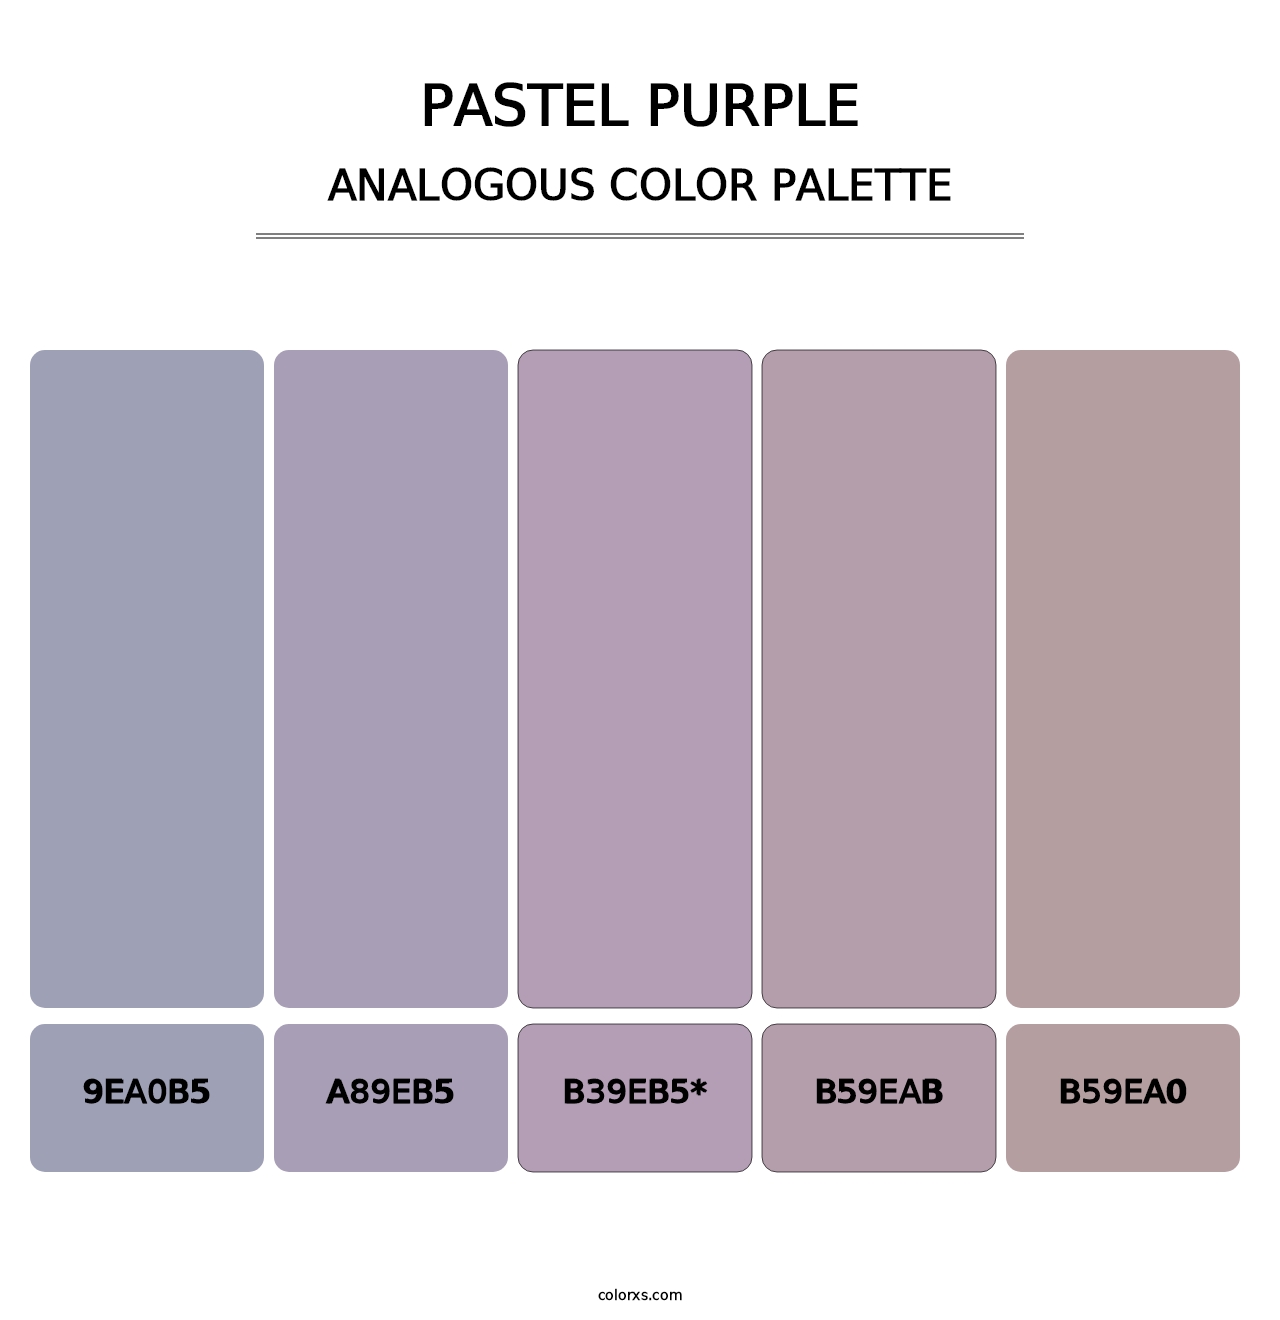 Pastel Purple - Analogous Color Palette